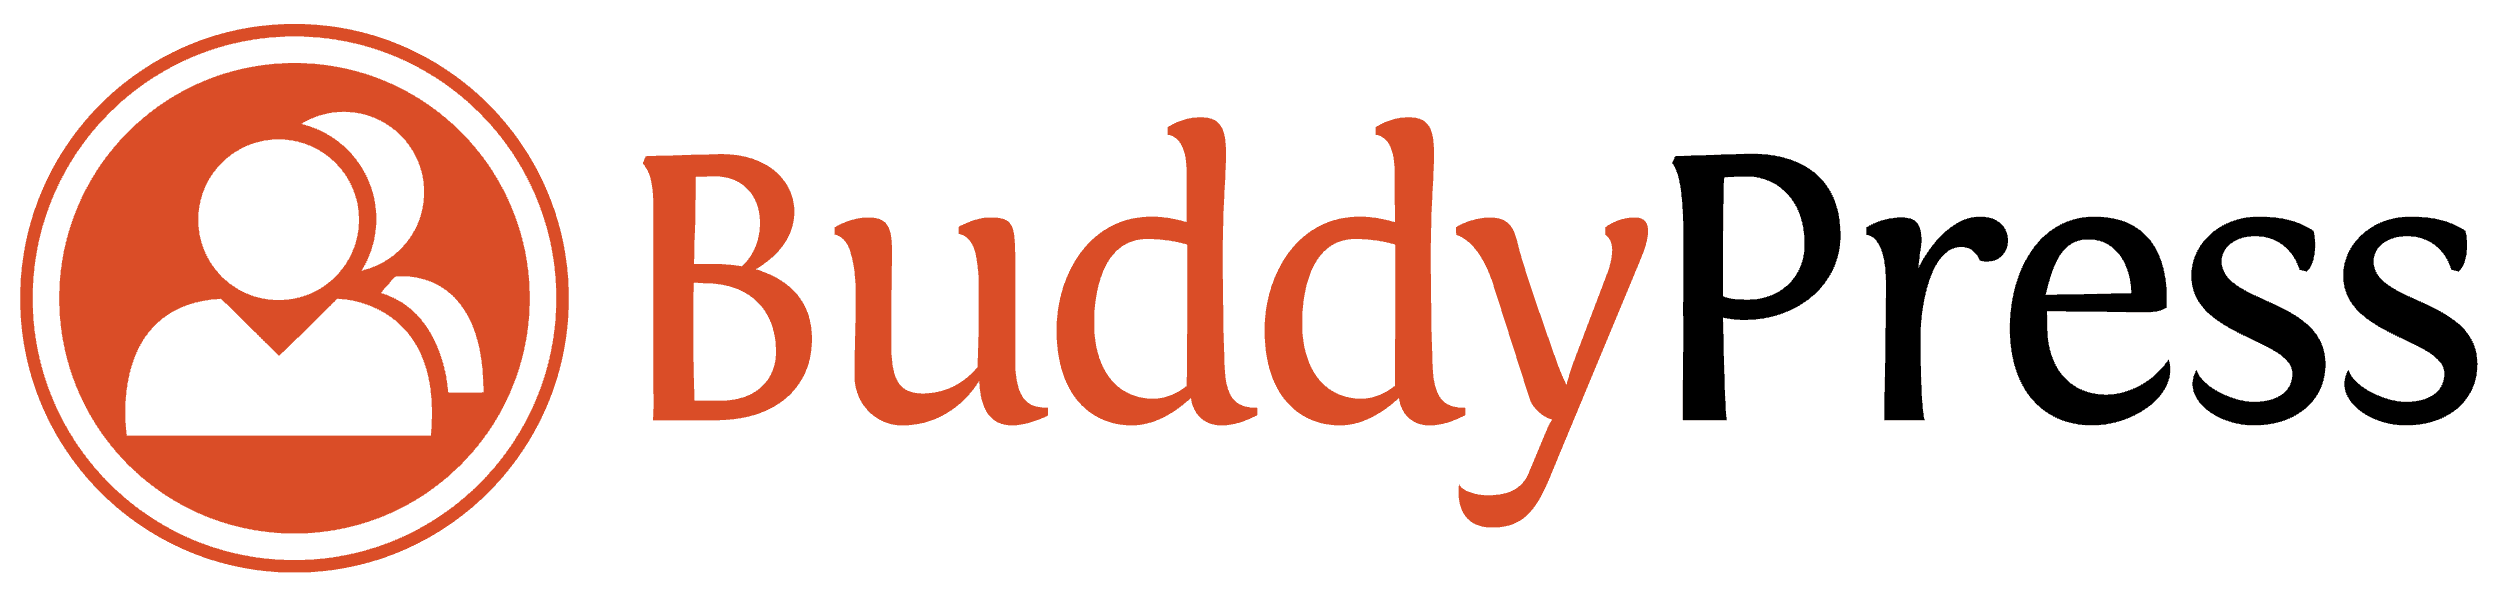 BuddyPress - Soziales Netzwerk für Wordpress